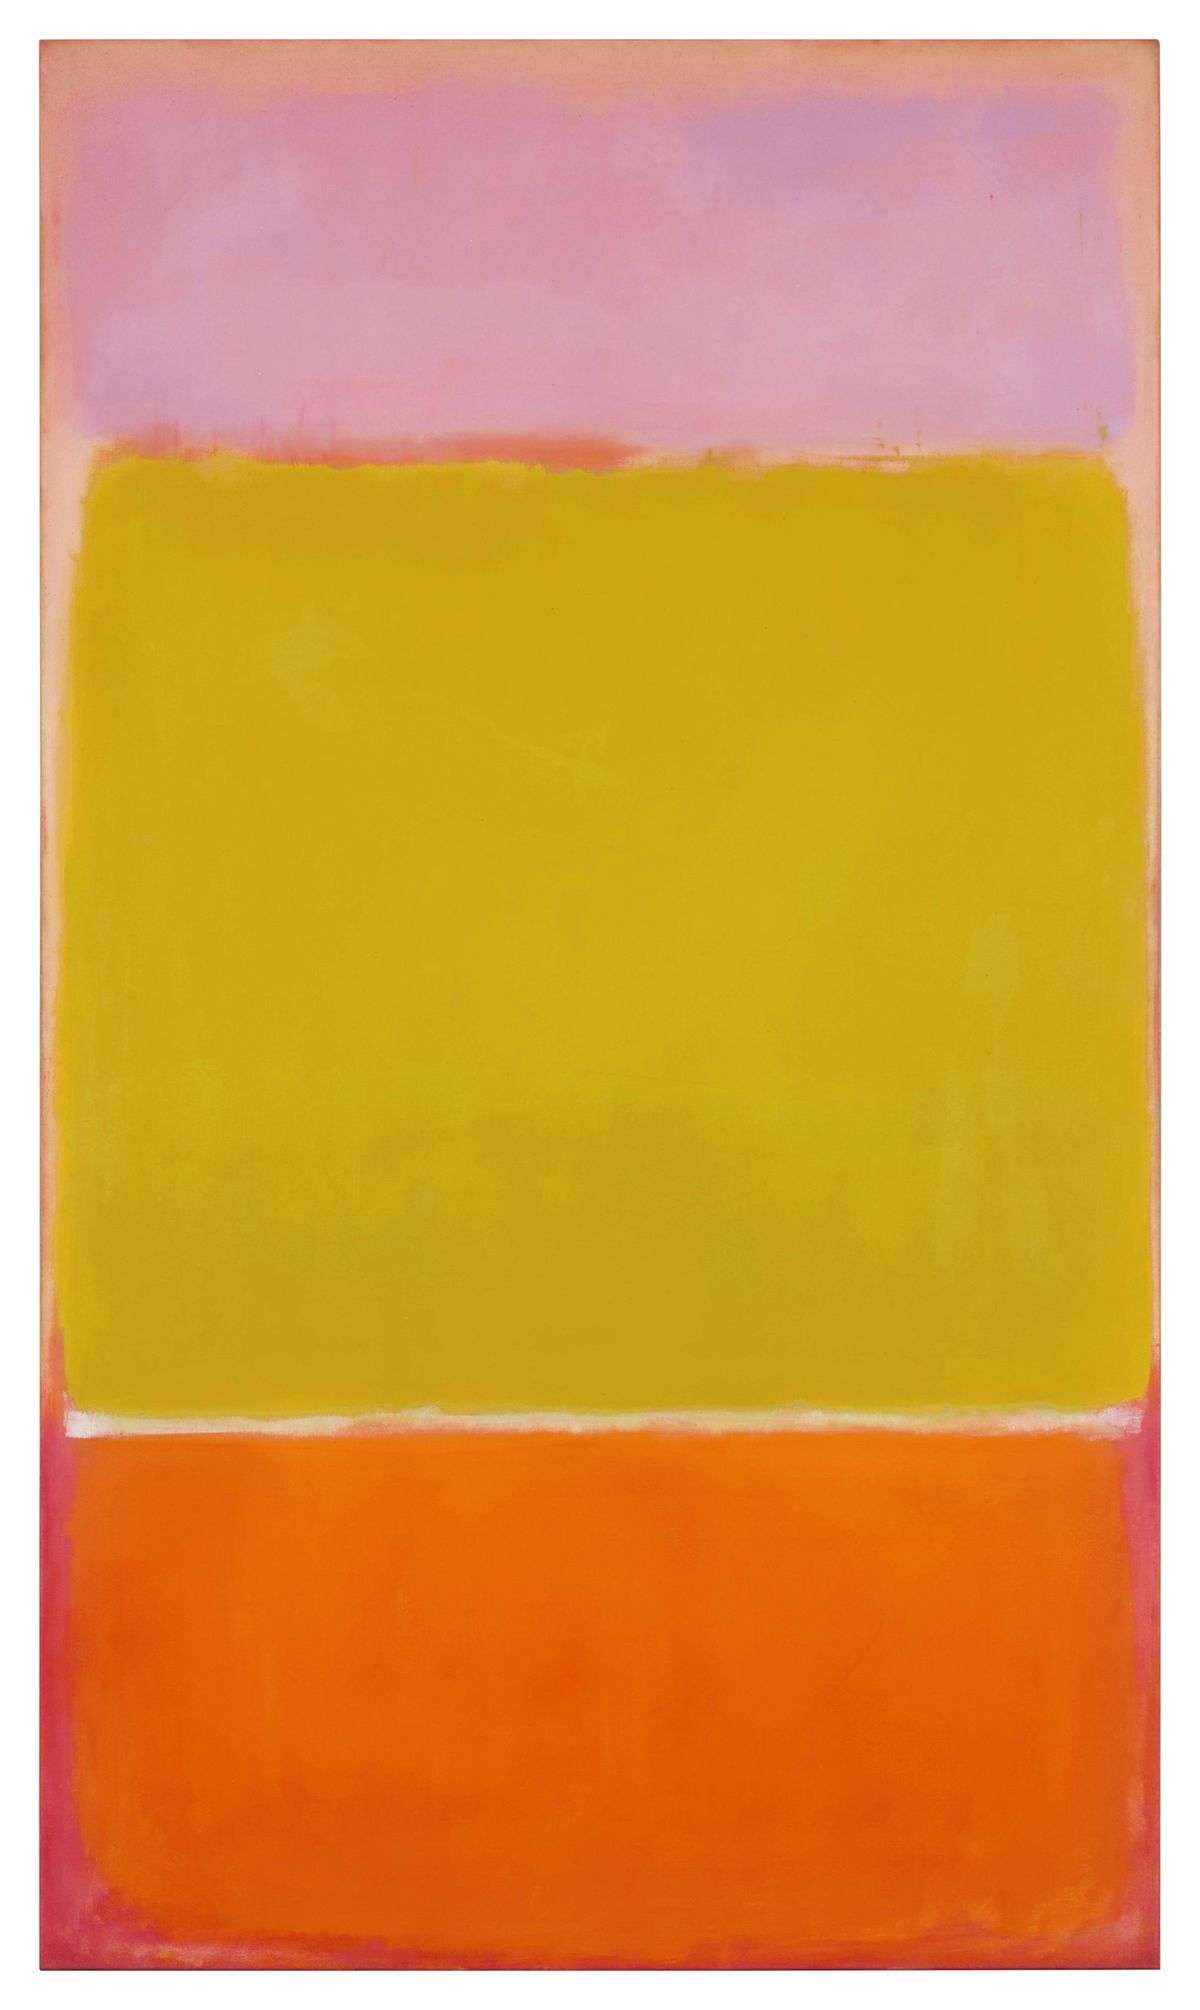 Mark Rothko’s No. 7, 1951